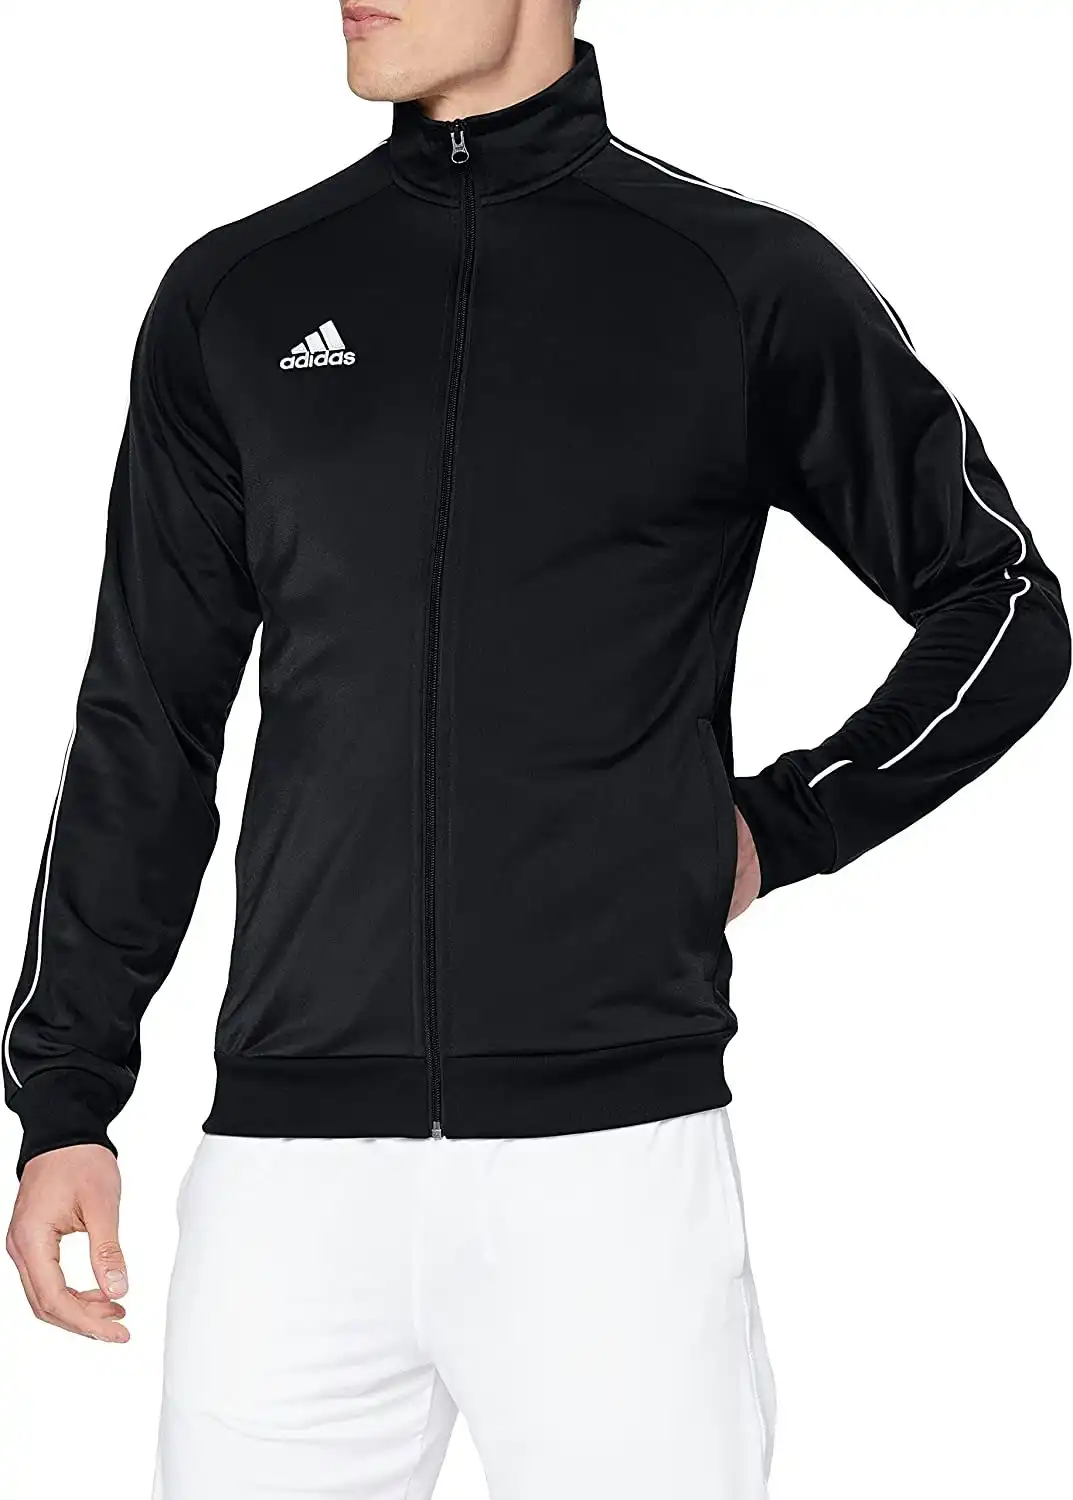 4 x Mens Adidas Core 18 Pes Zip Up Jacket Athletic Training Black/White